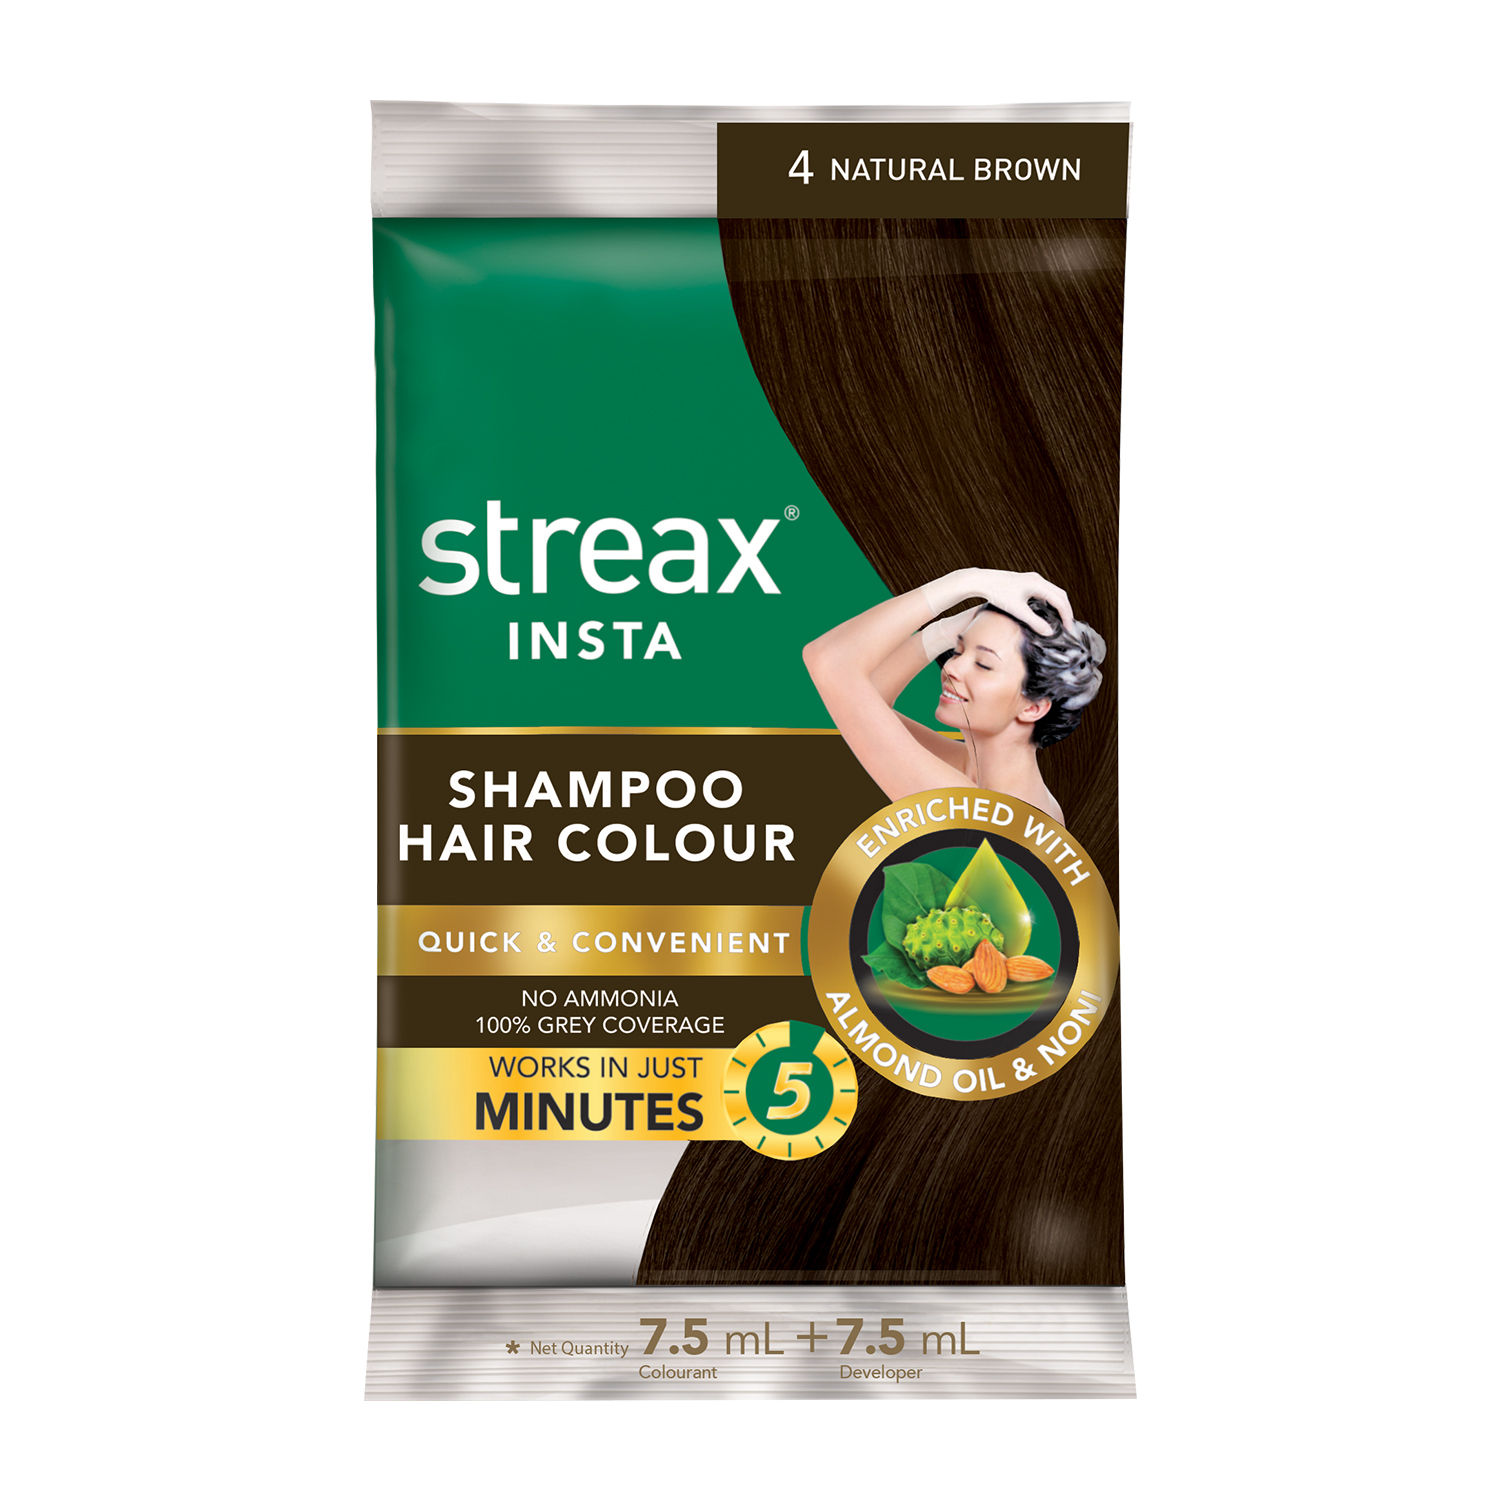 Buy Streax Insta Shampoo Hair Colour - Natural Brown (15 ml) - Purplle